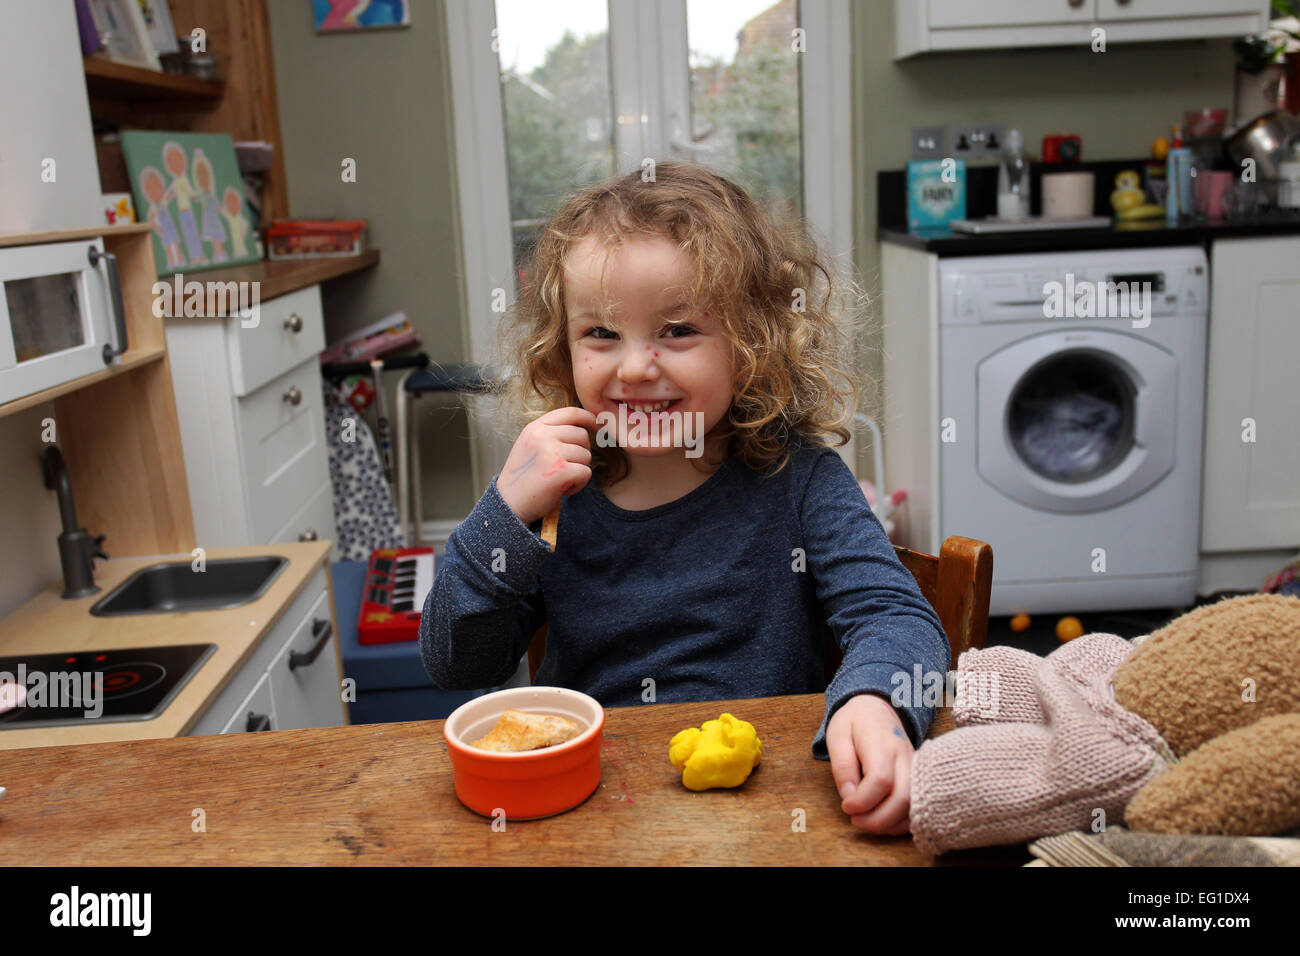 Une belle jeune fillette de trois ans avec la varicelle, photographié à son domicile de West Sussex, UK. Banque D'Images